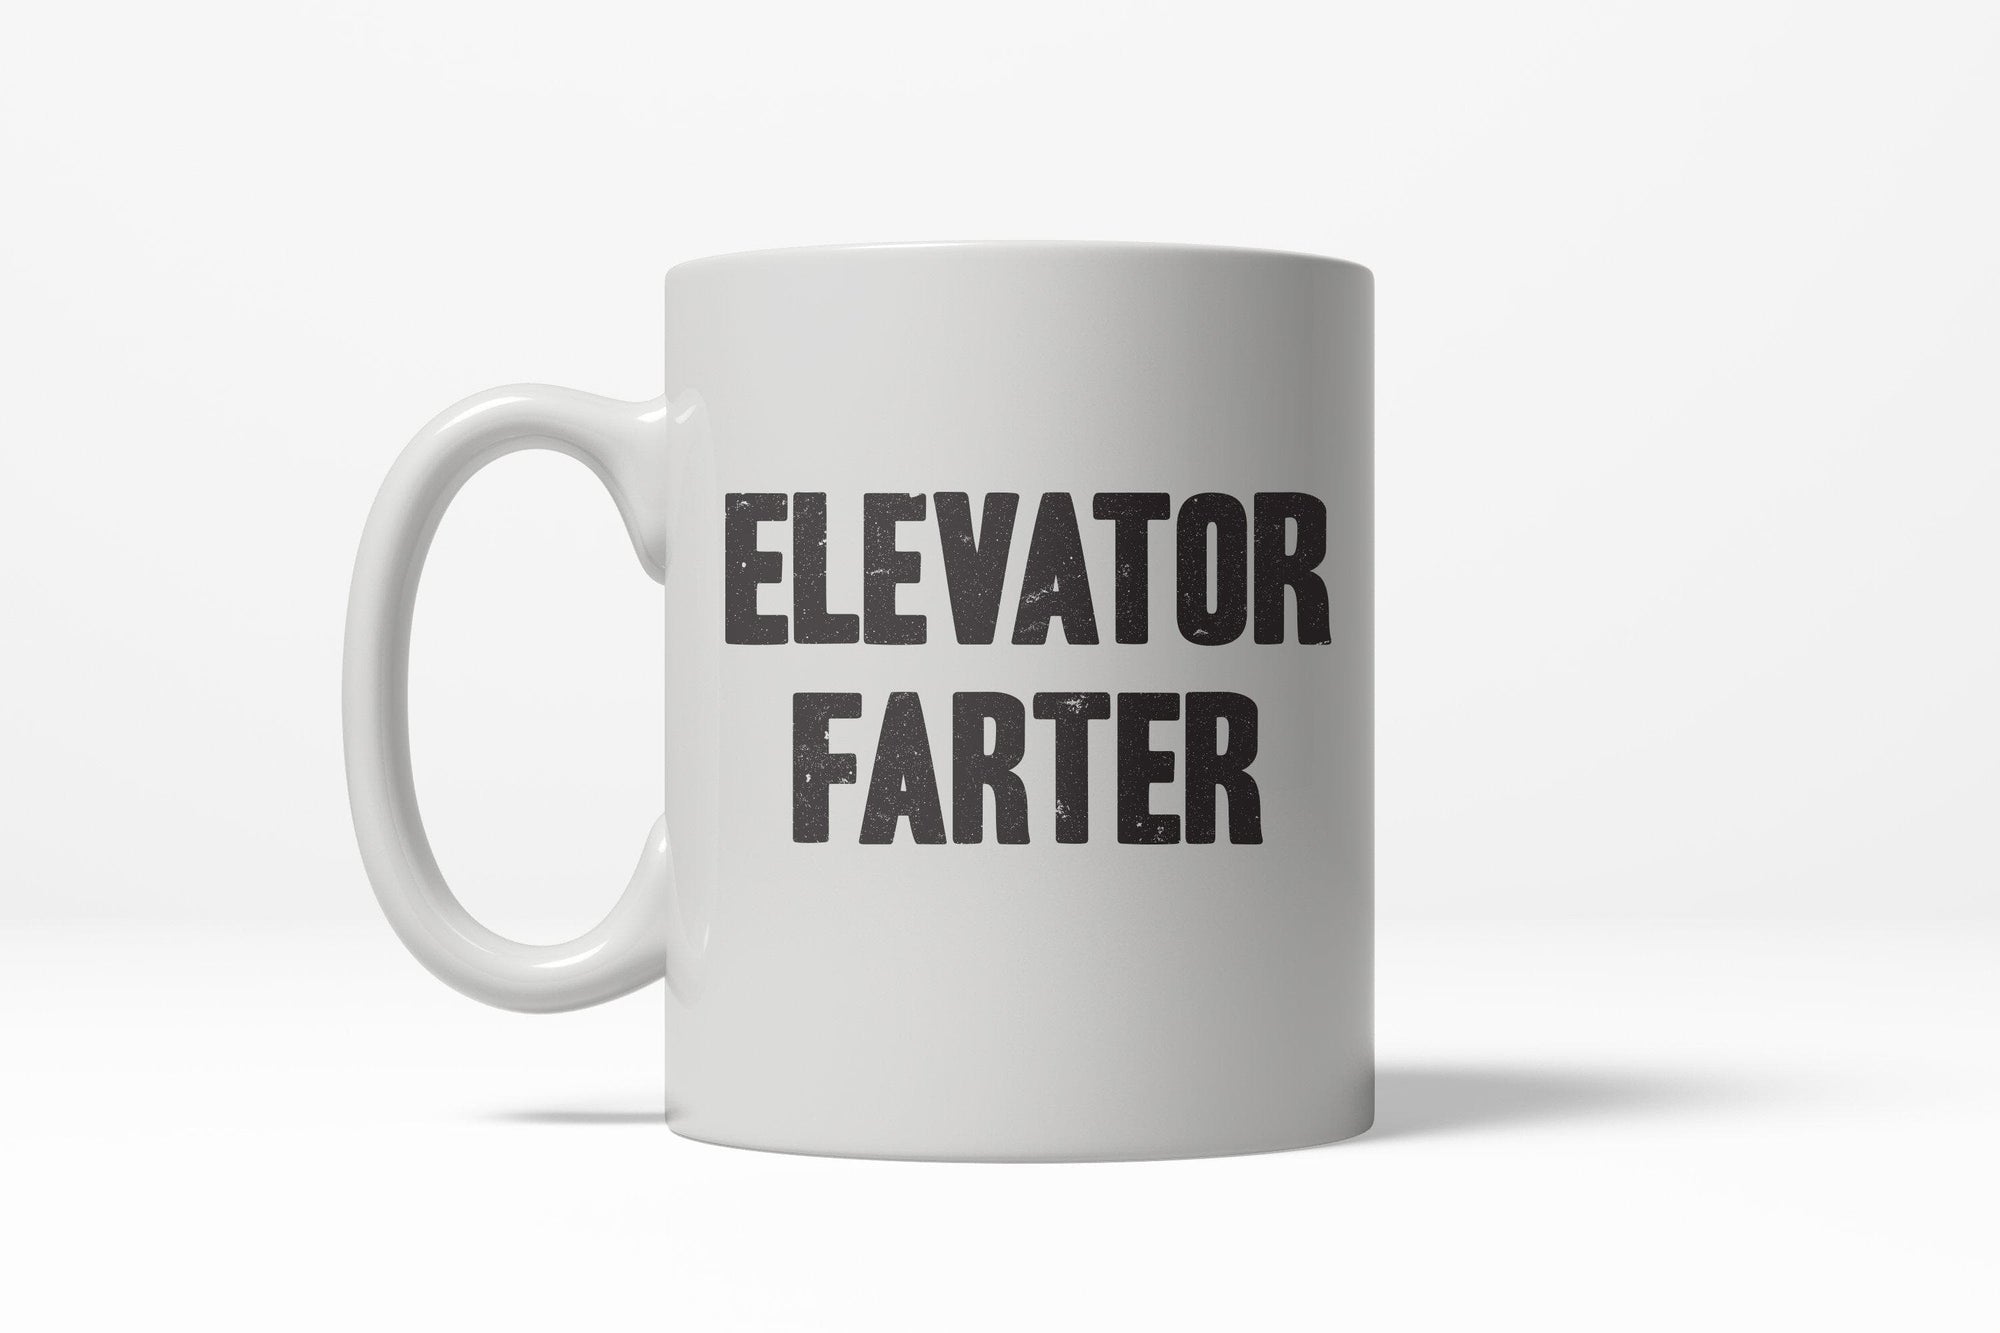 Elevator Farter Mug - Crazy Dog T-Shirts